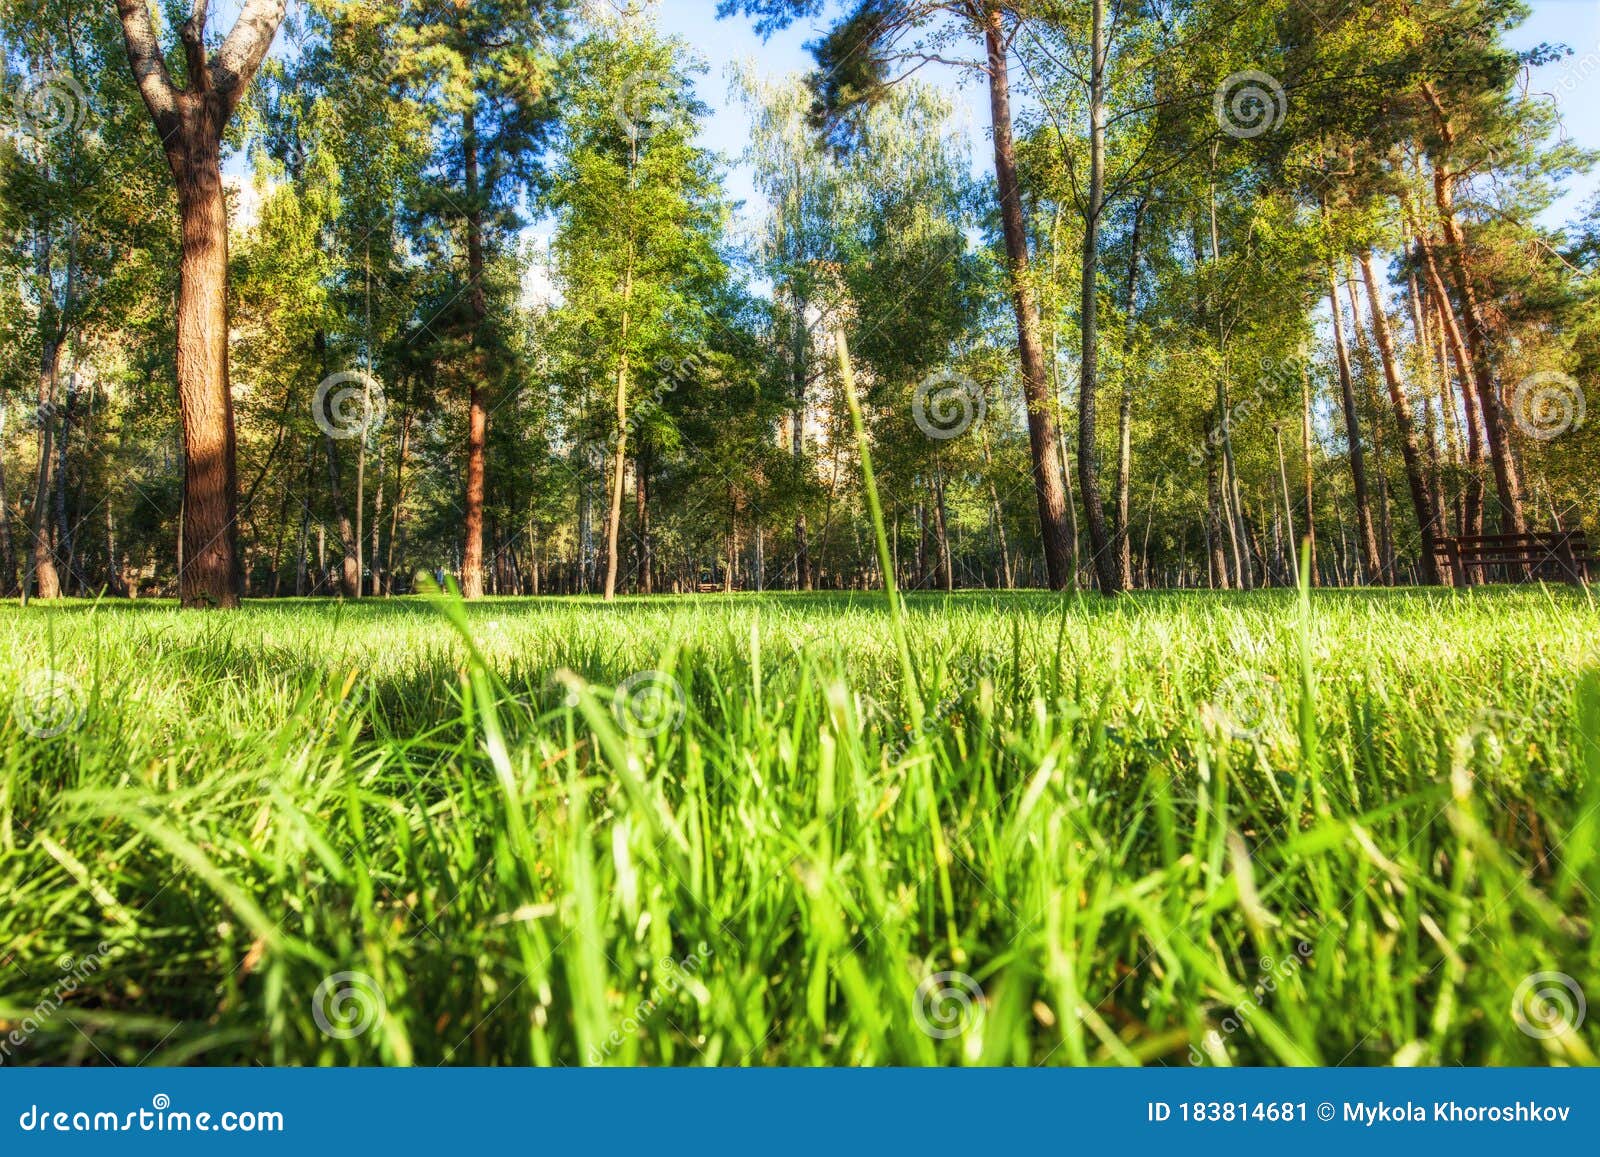 Hãy cùng tận hưỡng cảm giác thư giãn với bức ảnh Cận cảnh Cánh đồng cỏ xanh với nền công viên mờ Stock Image. Với sắc xanh tươi sáng và đầy sức sống của cỏ, bức ảnh này sẽ khiến bạn cảm thấy như đang sống giữa không gian thiên nhiên trong lành.